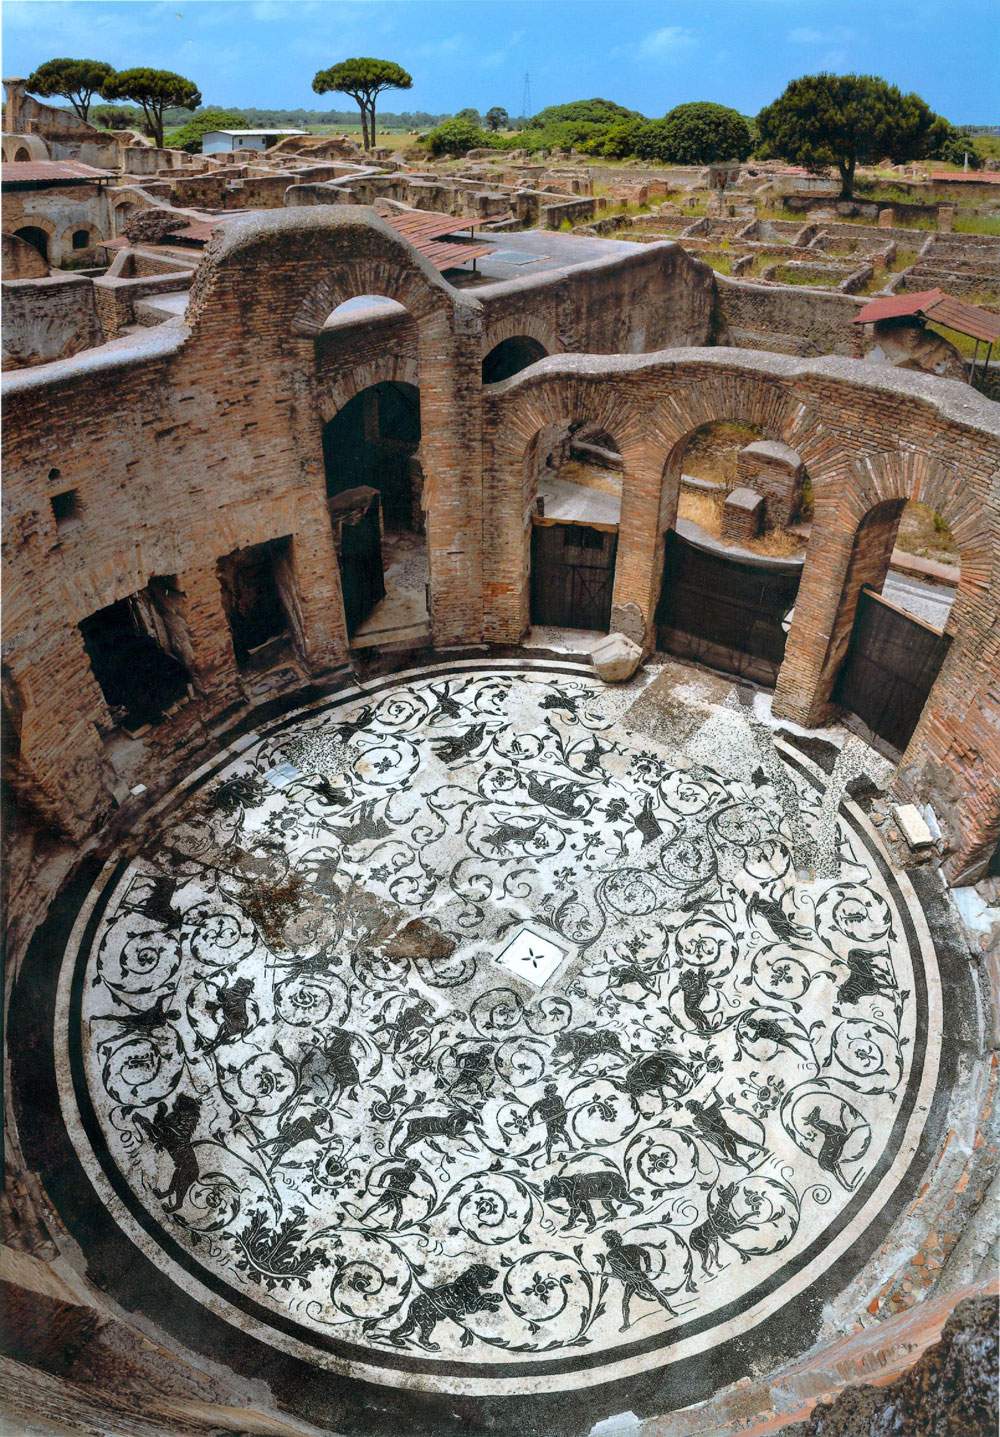 Ostia Antica, la più grande e ben conservata città romana, torna accessibile liberamente dal 2 giugno